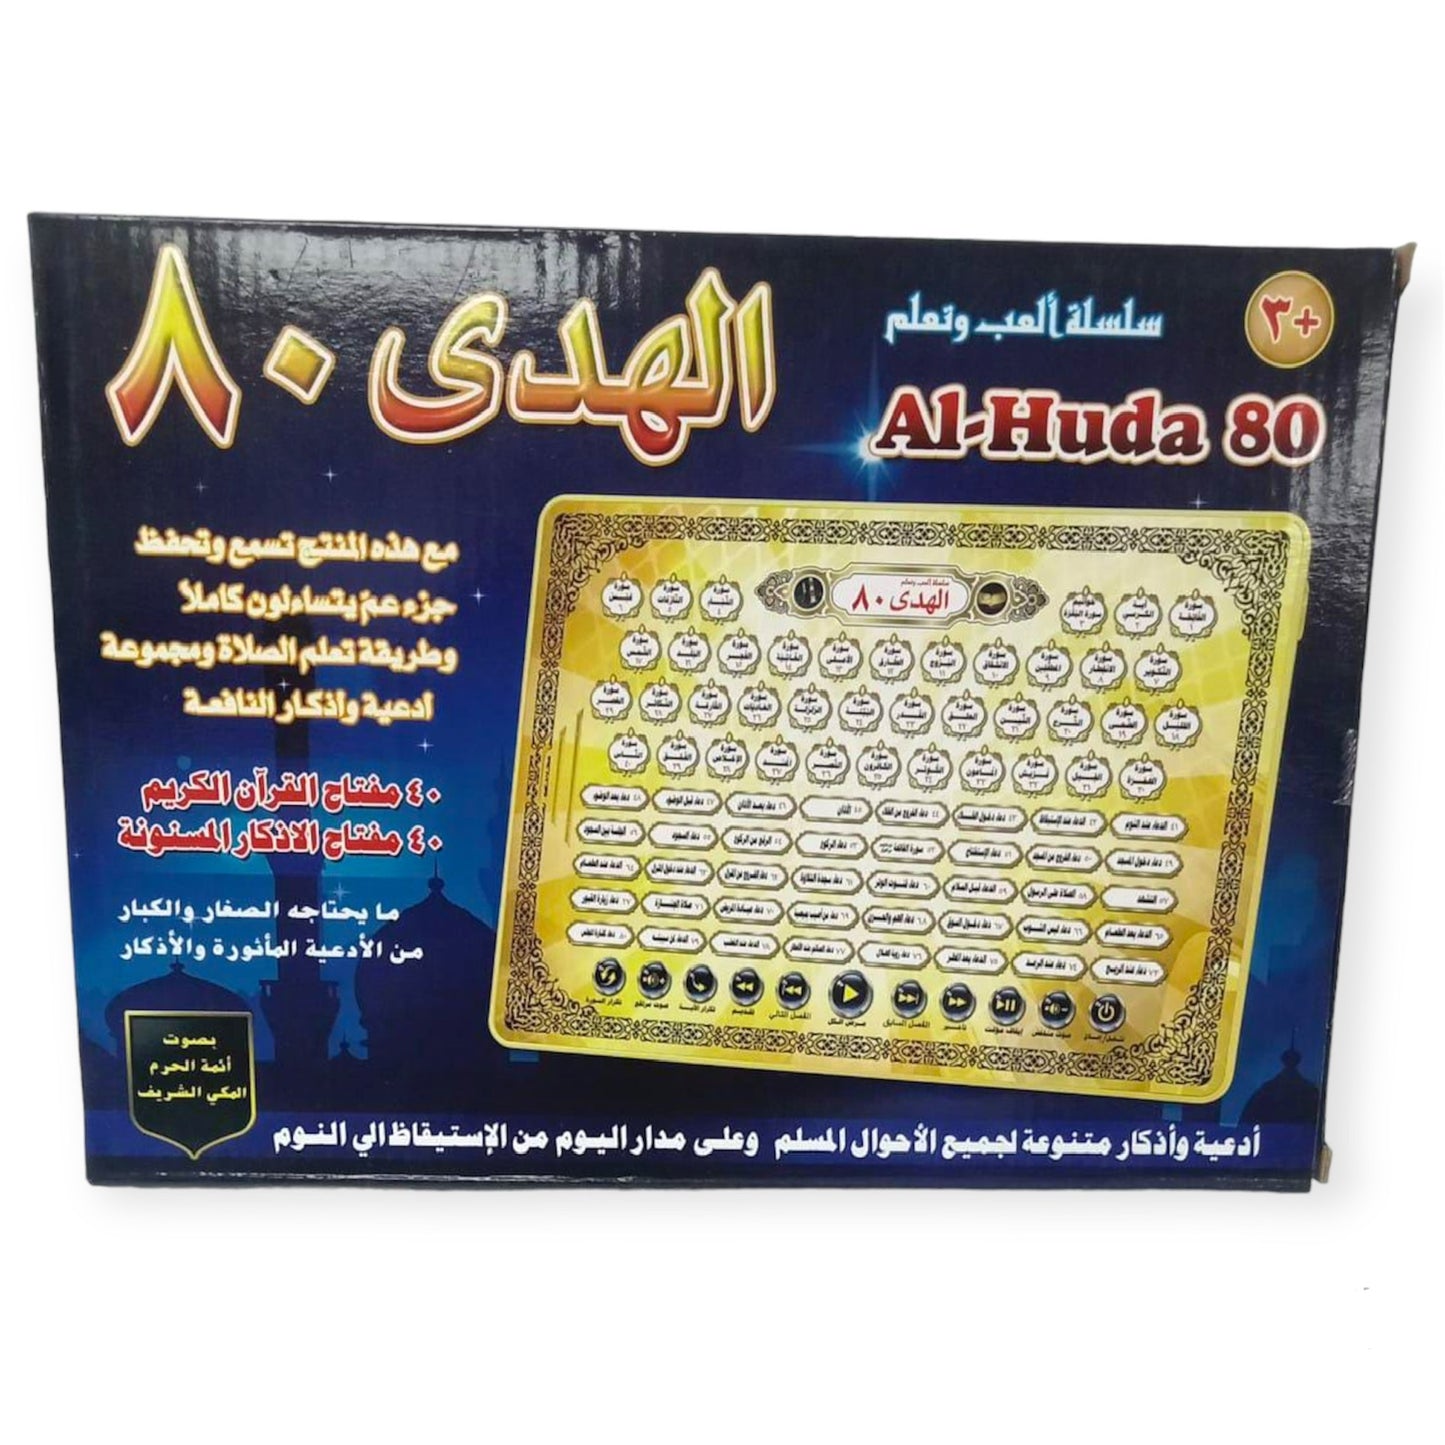 Al-Huda 80 || سلسلة العب و تعلم الهدى ٨٠